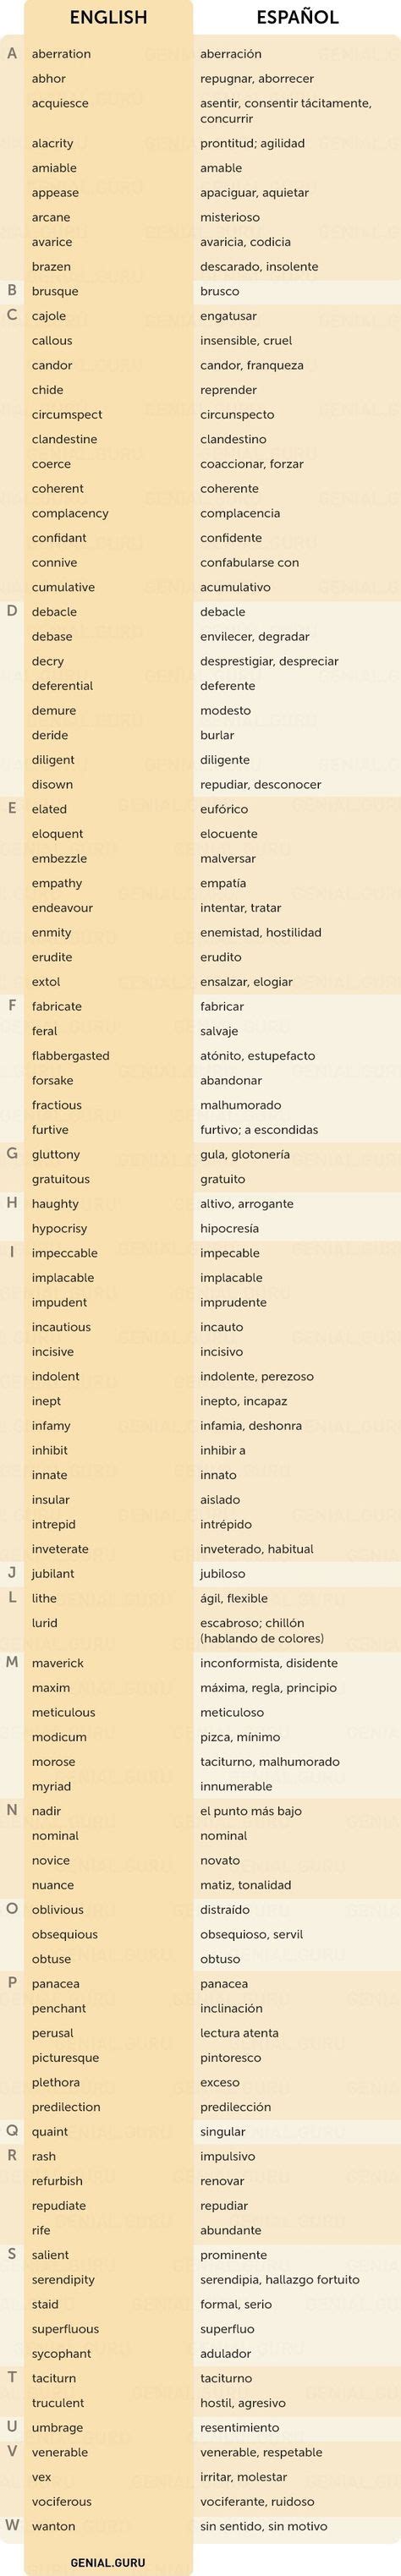 Vocabulario Poco Comun En Ingles 150 Frases En Ingles Aprender